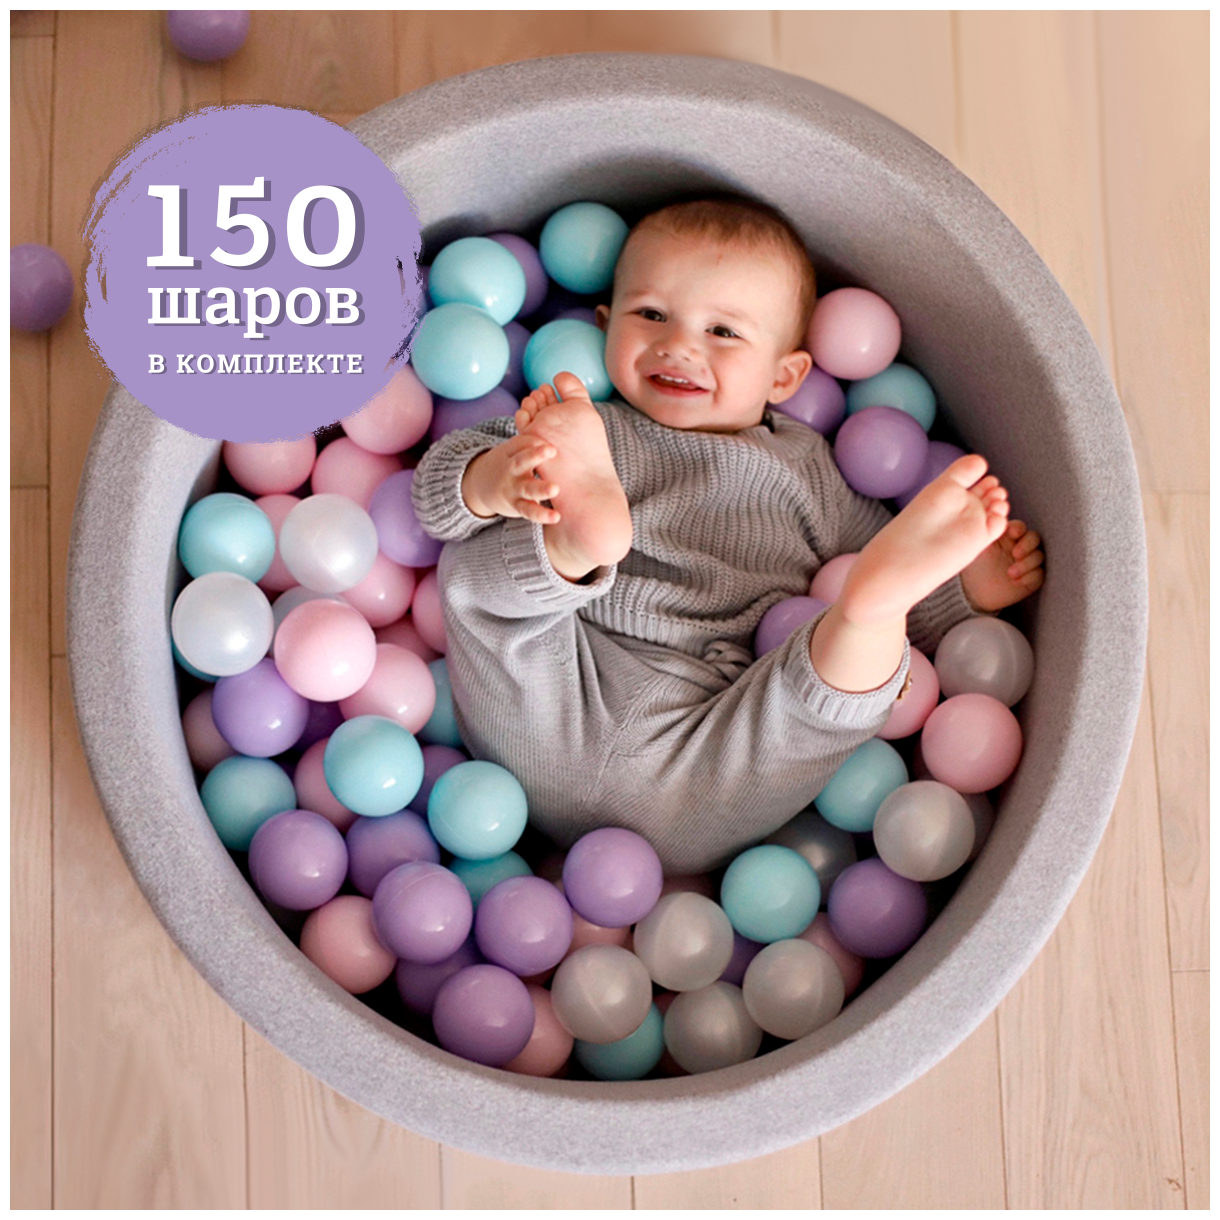 Сухой бассейн с шариками №212 Anlipool 70/30см + 150 шаров детский бассейн игрушки для детей подарок детям